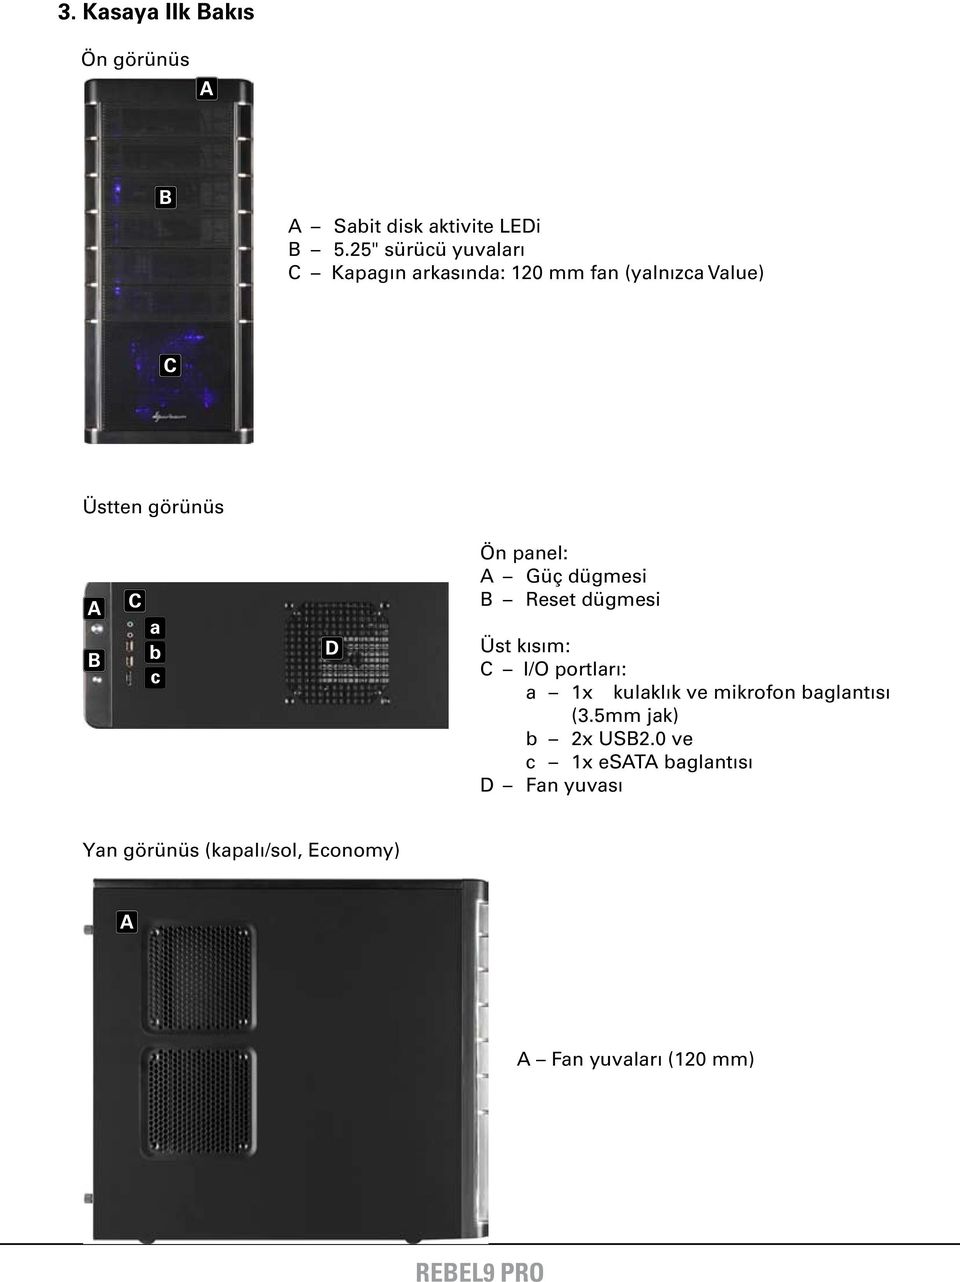 c D Ön panel: Güç dügmesi B Reset dügmesi Üst kısım: C I/O portları: a 1x kulaklık ve